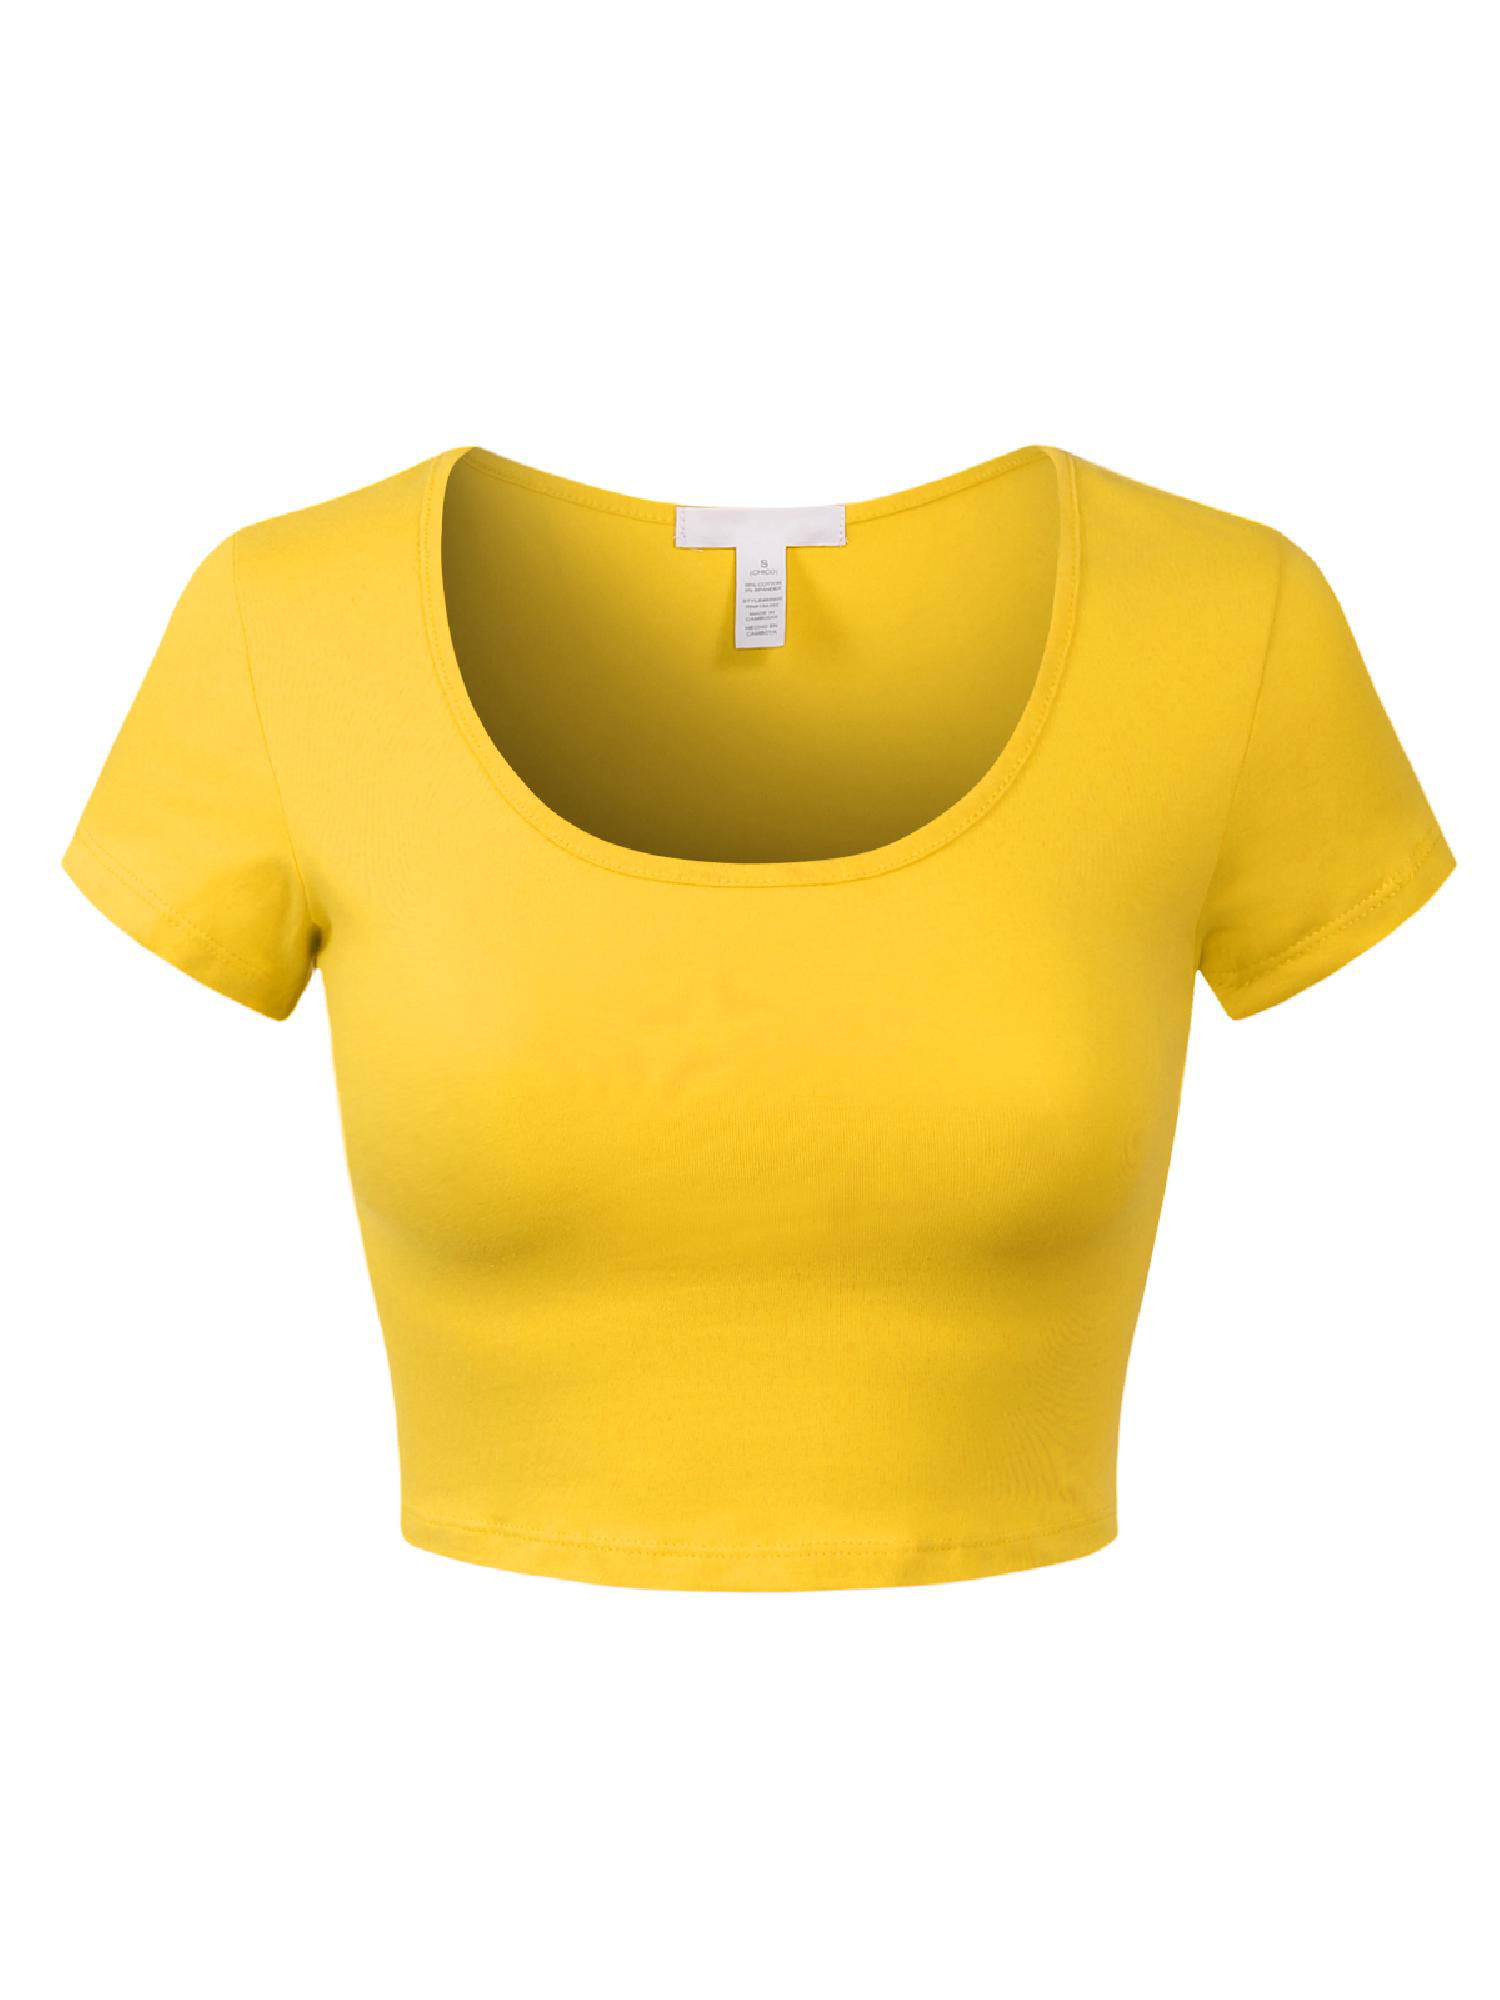 MixMatchy Women's Cotton Solid Scoop Neck Cap Sleeve Crop Top Shirt ...